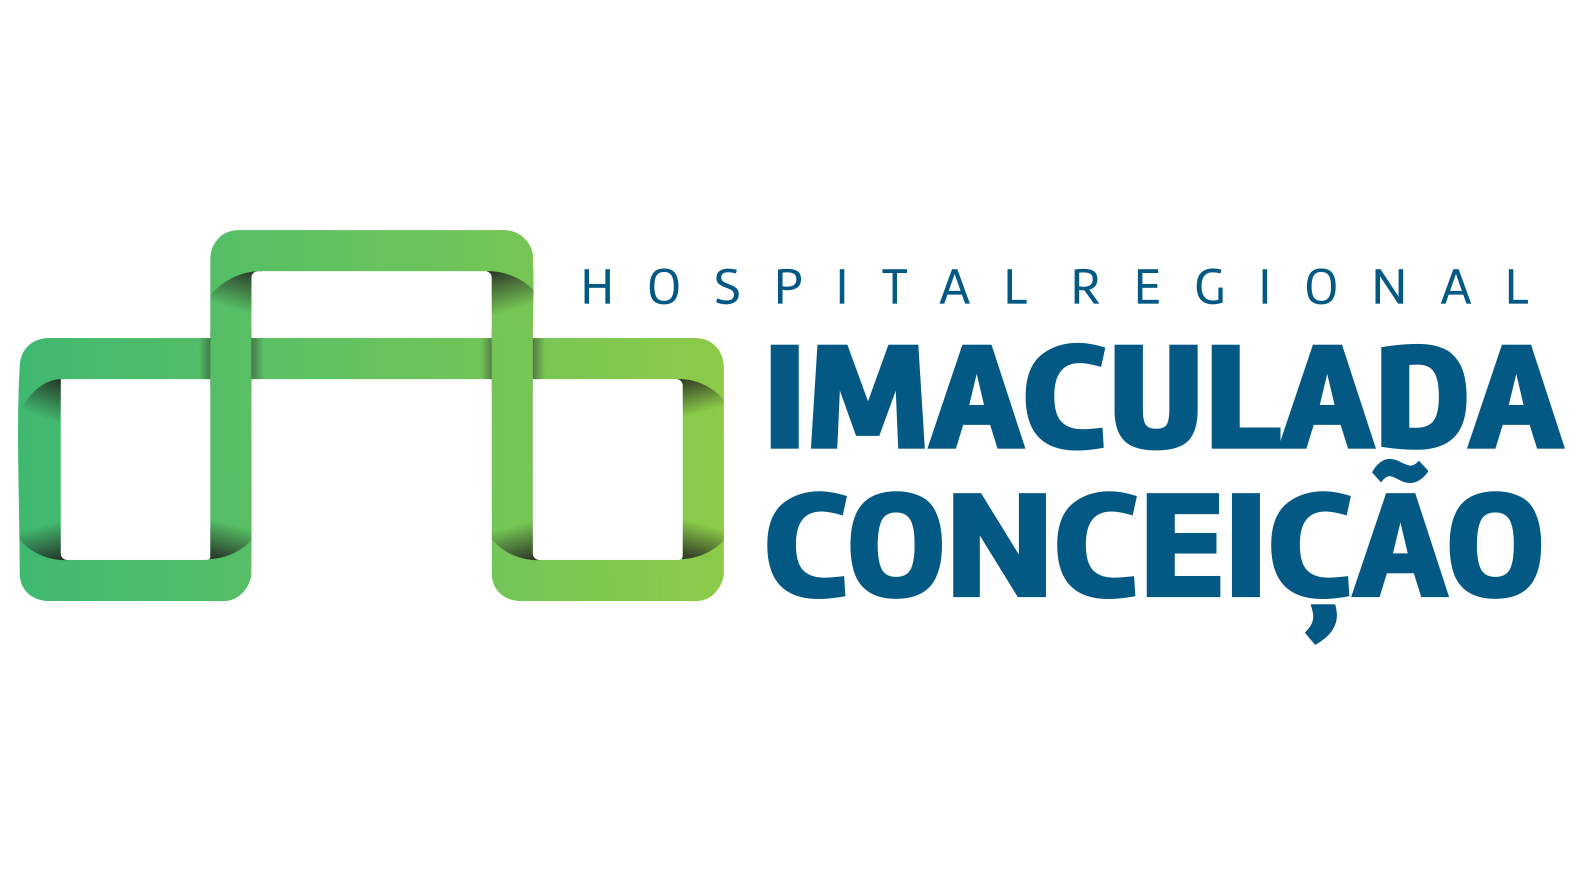 HIC – Hospital Imaculada Conceição